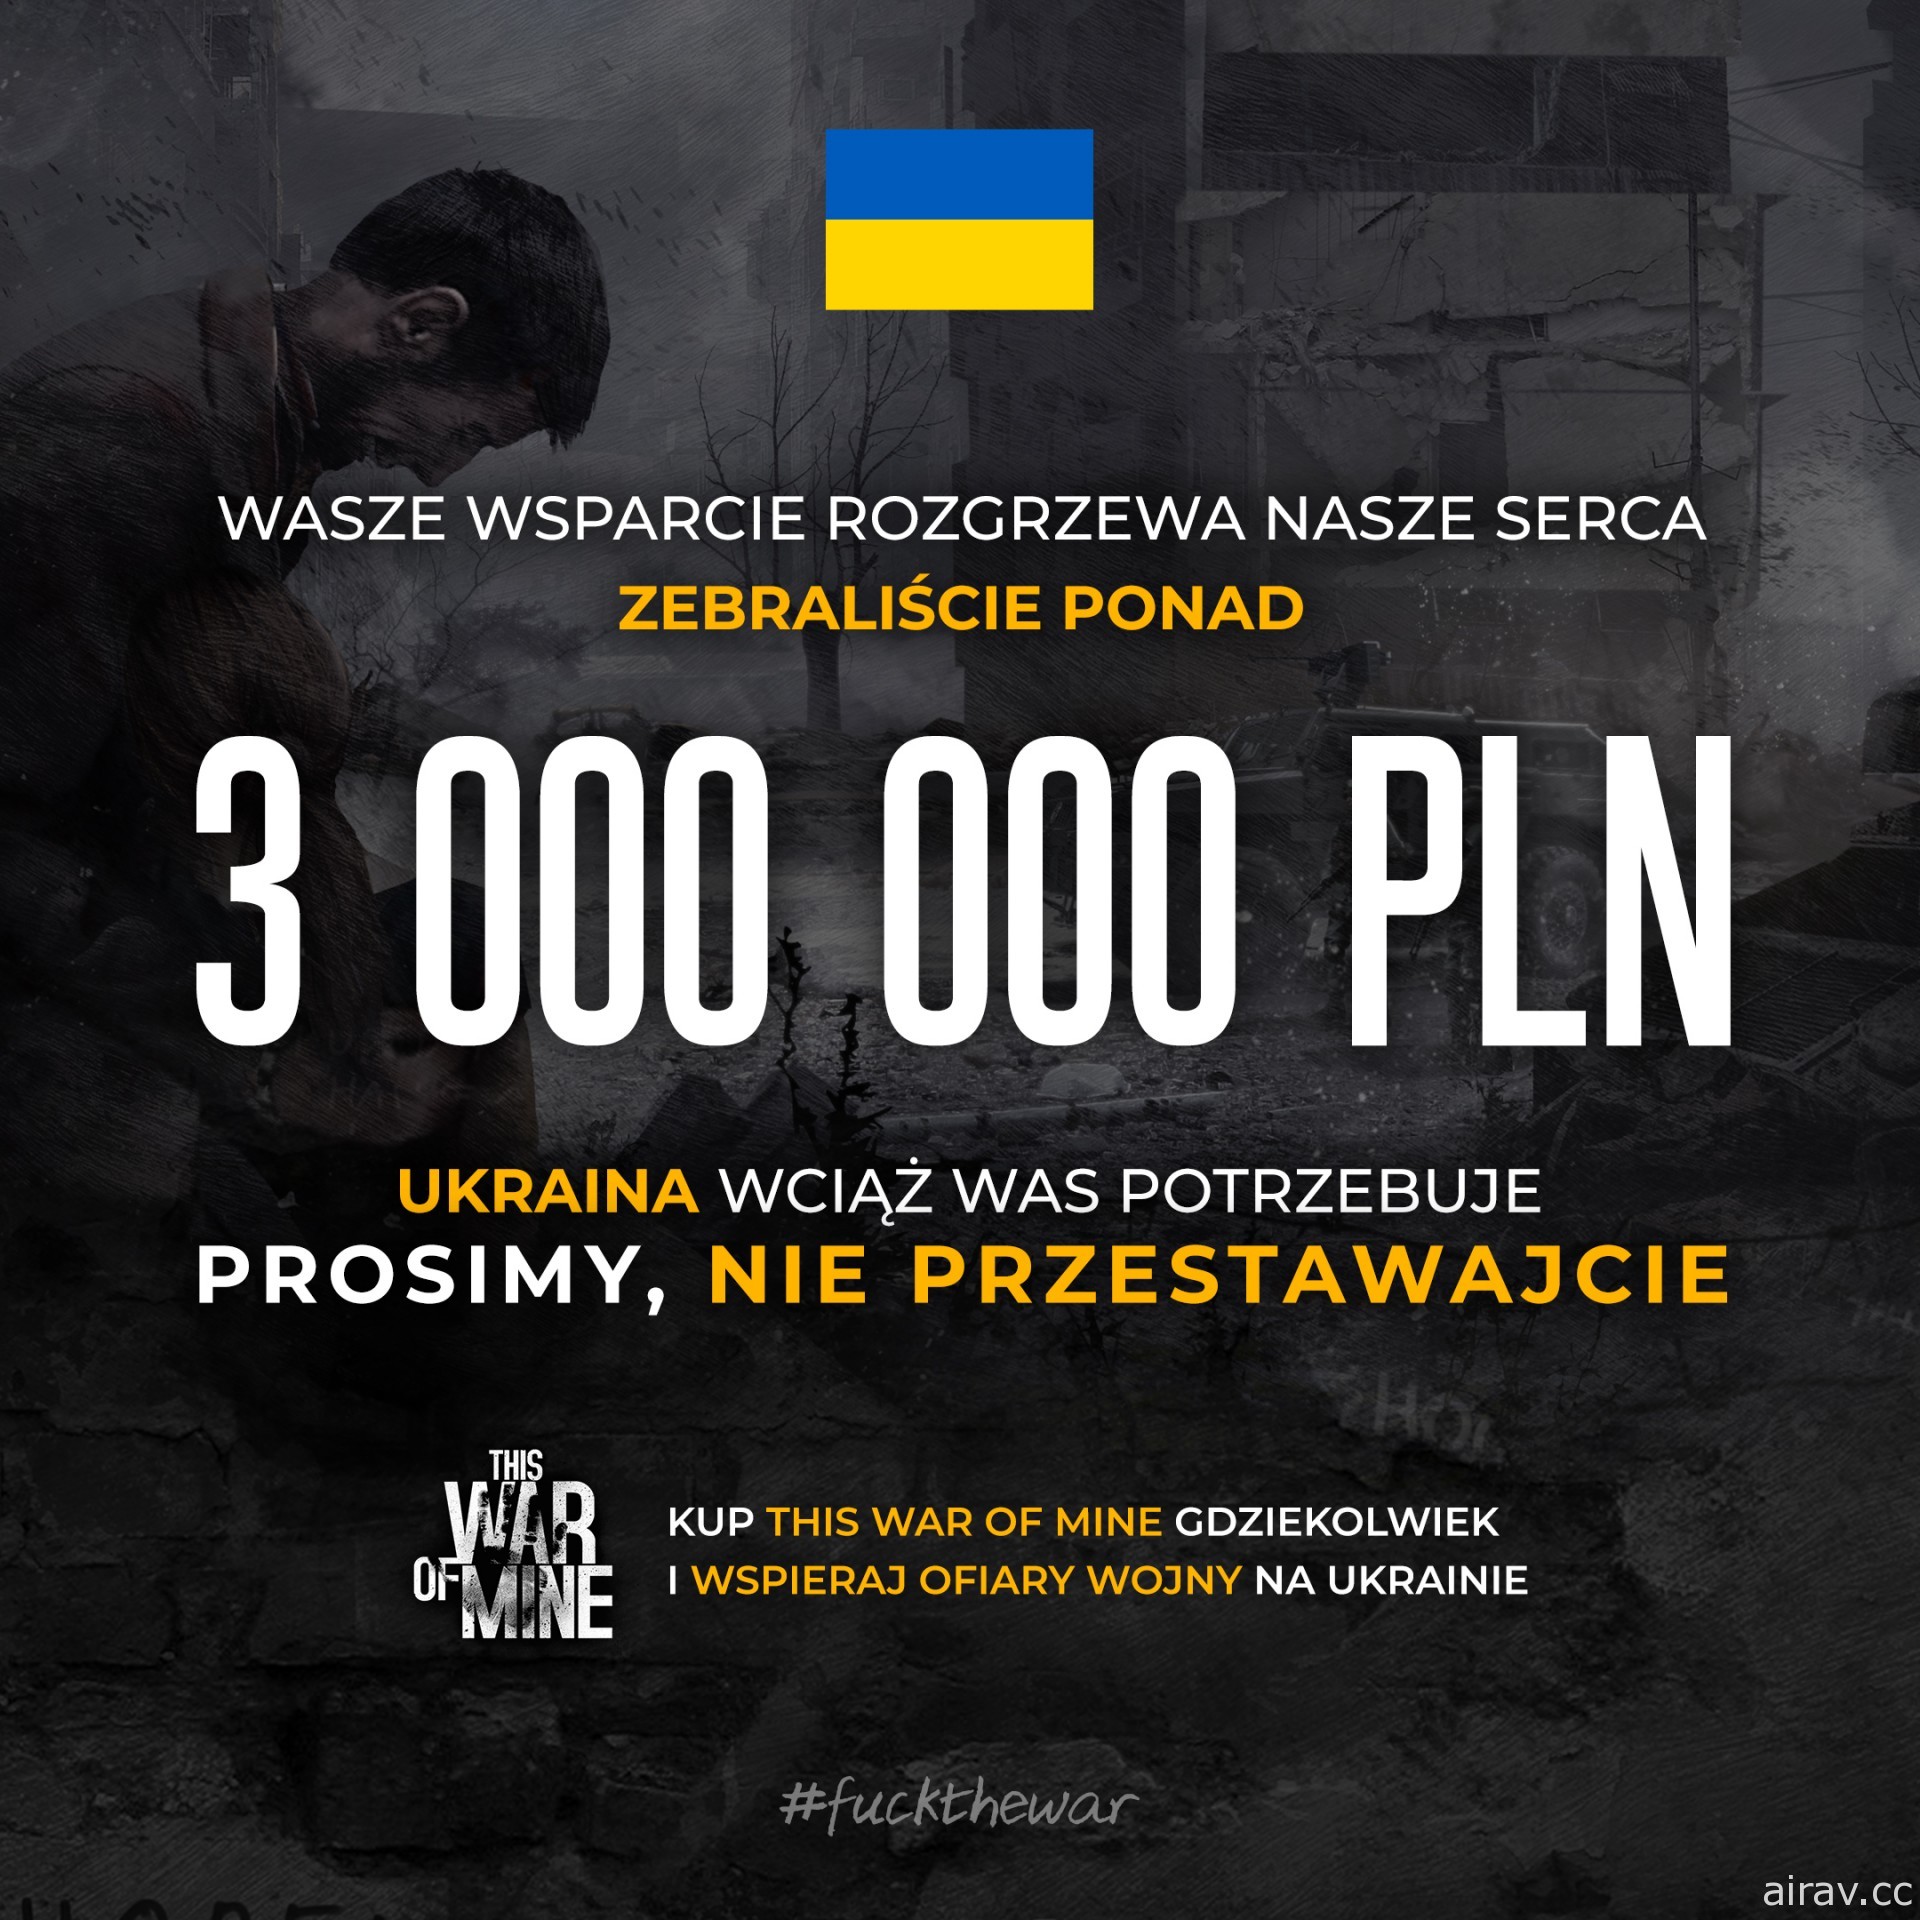 帮助乌克兰战火下受害者 《这是我的战争》团队行动获得响应、公开初步募款成果